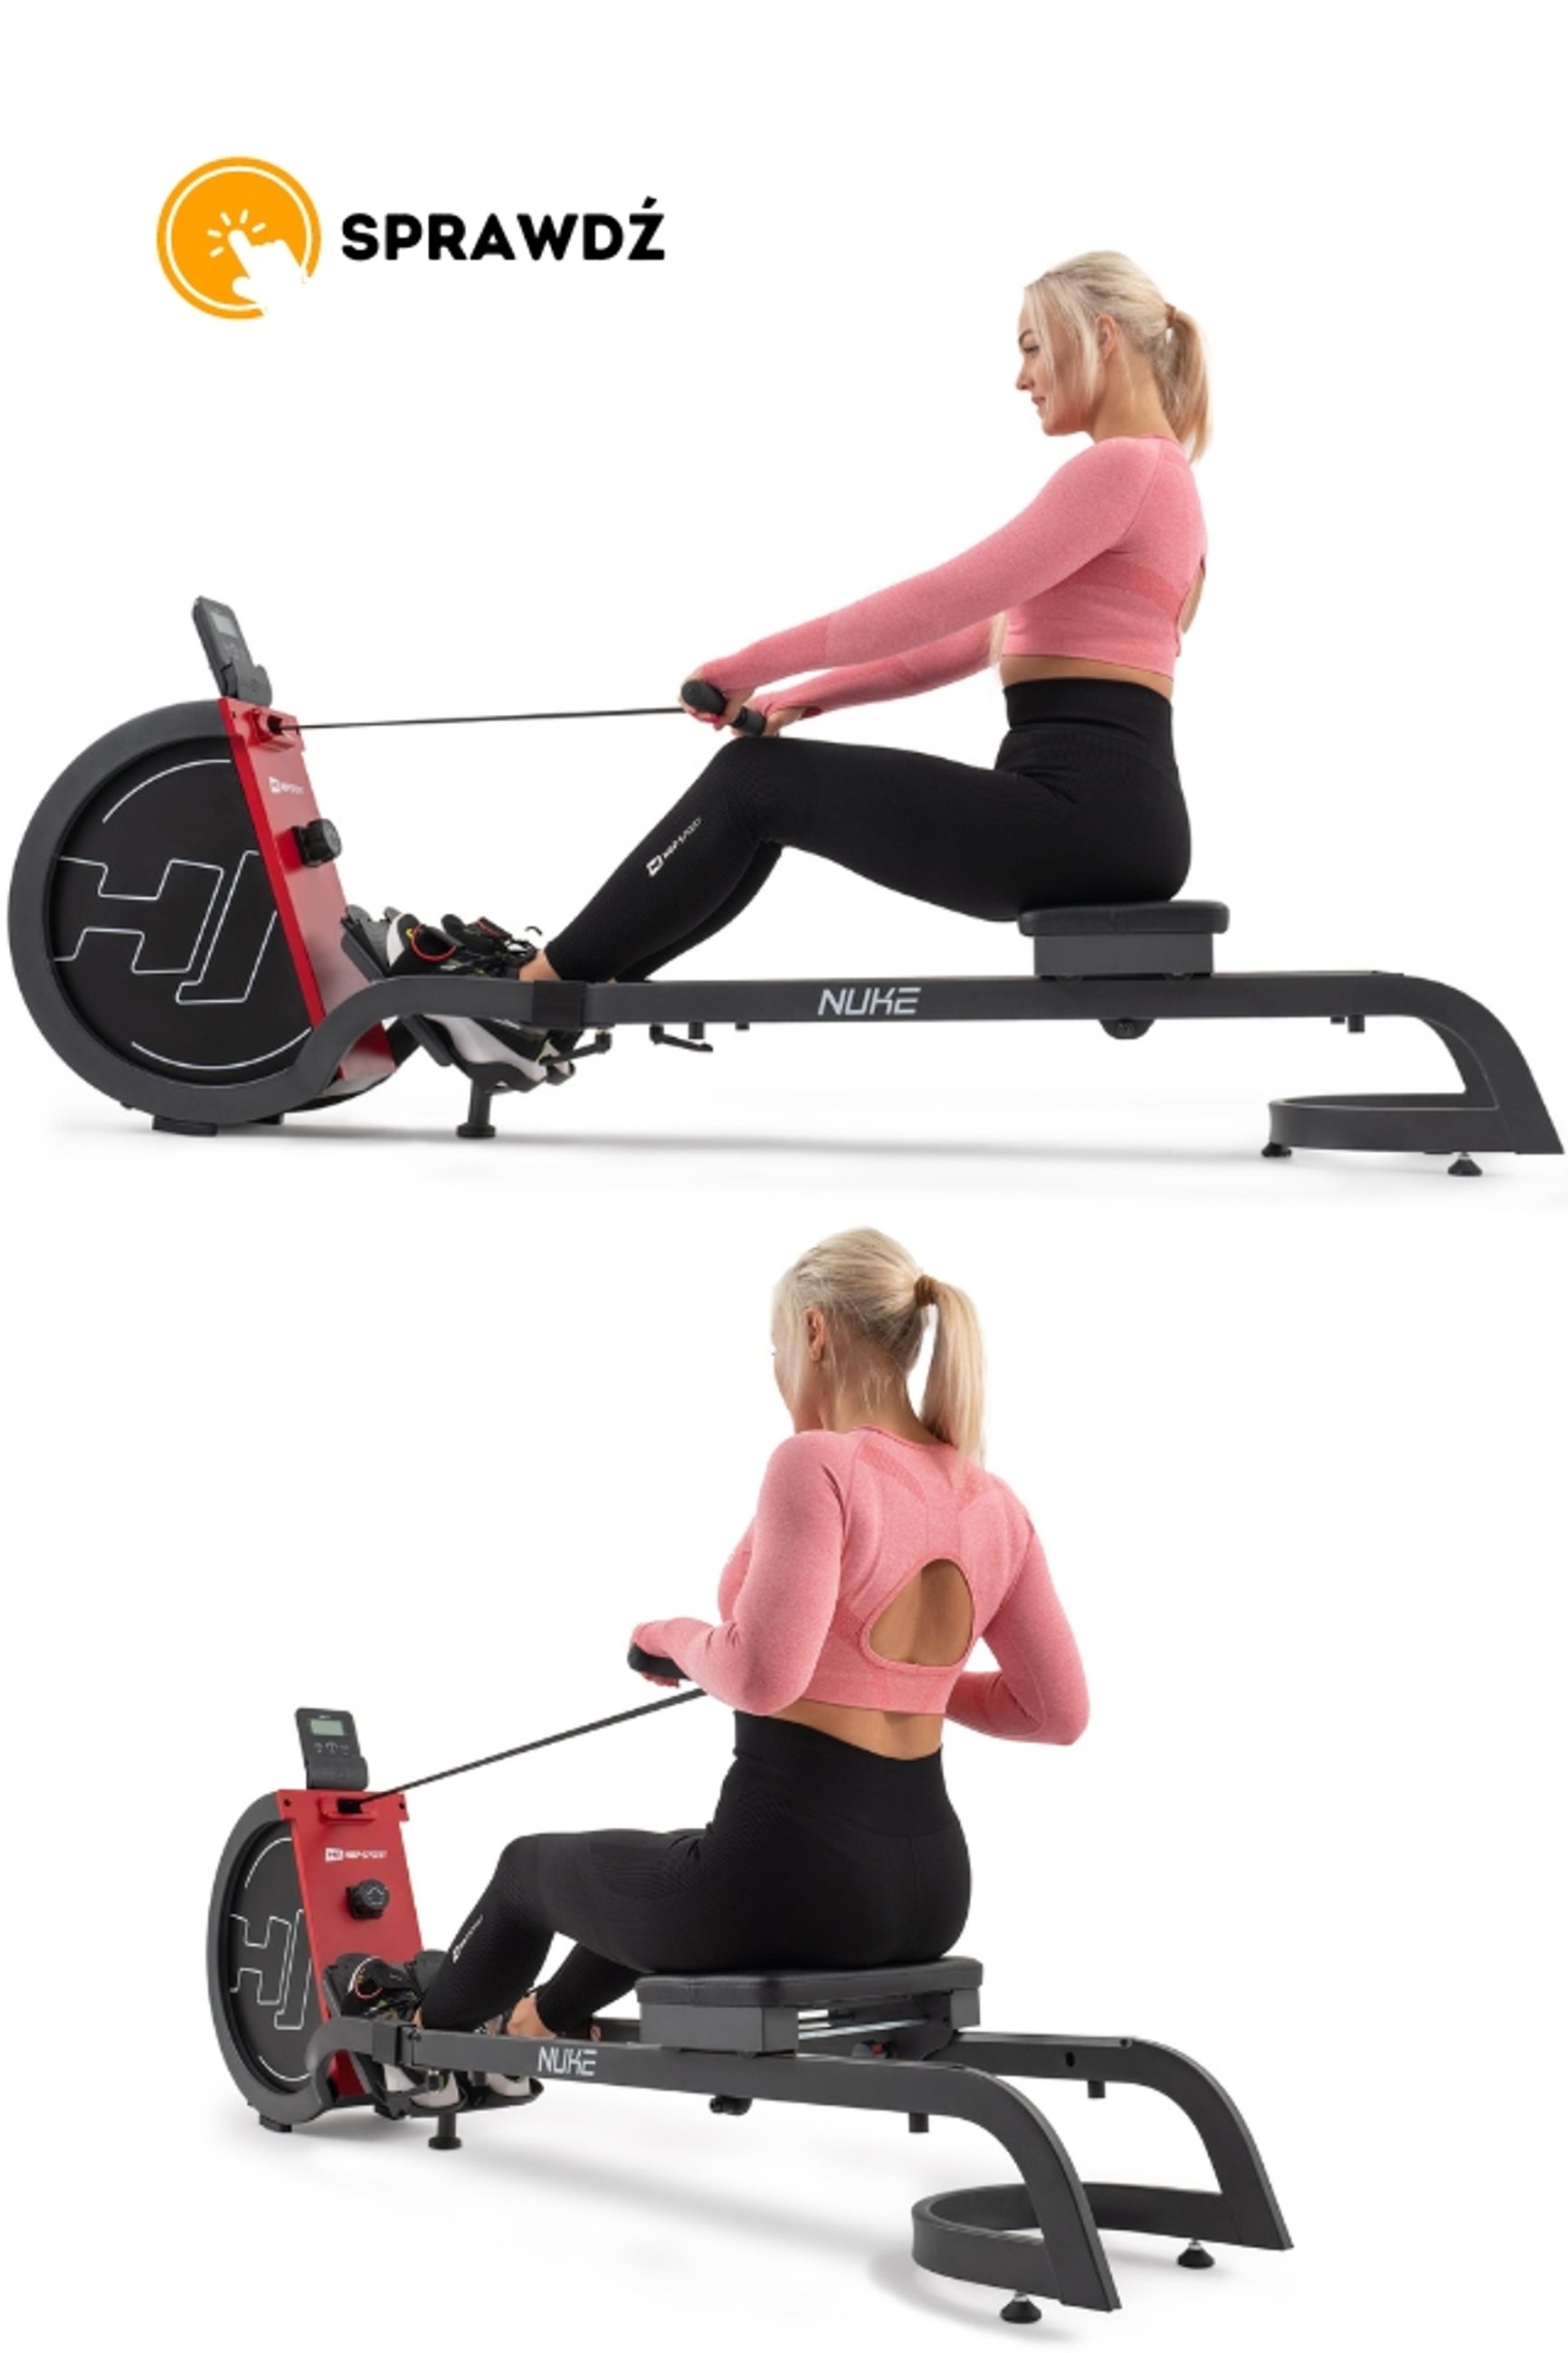 modelka ćwicząca na wioślarzu magnetycznym HS-070R Nuke czerwonym marki Hop-Sport